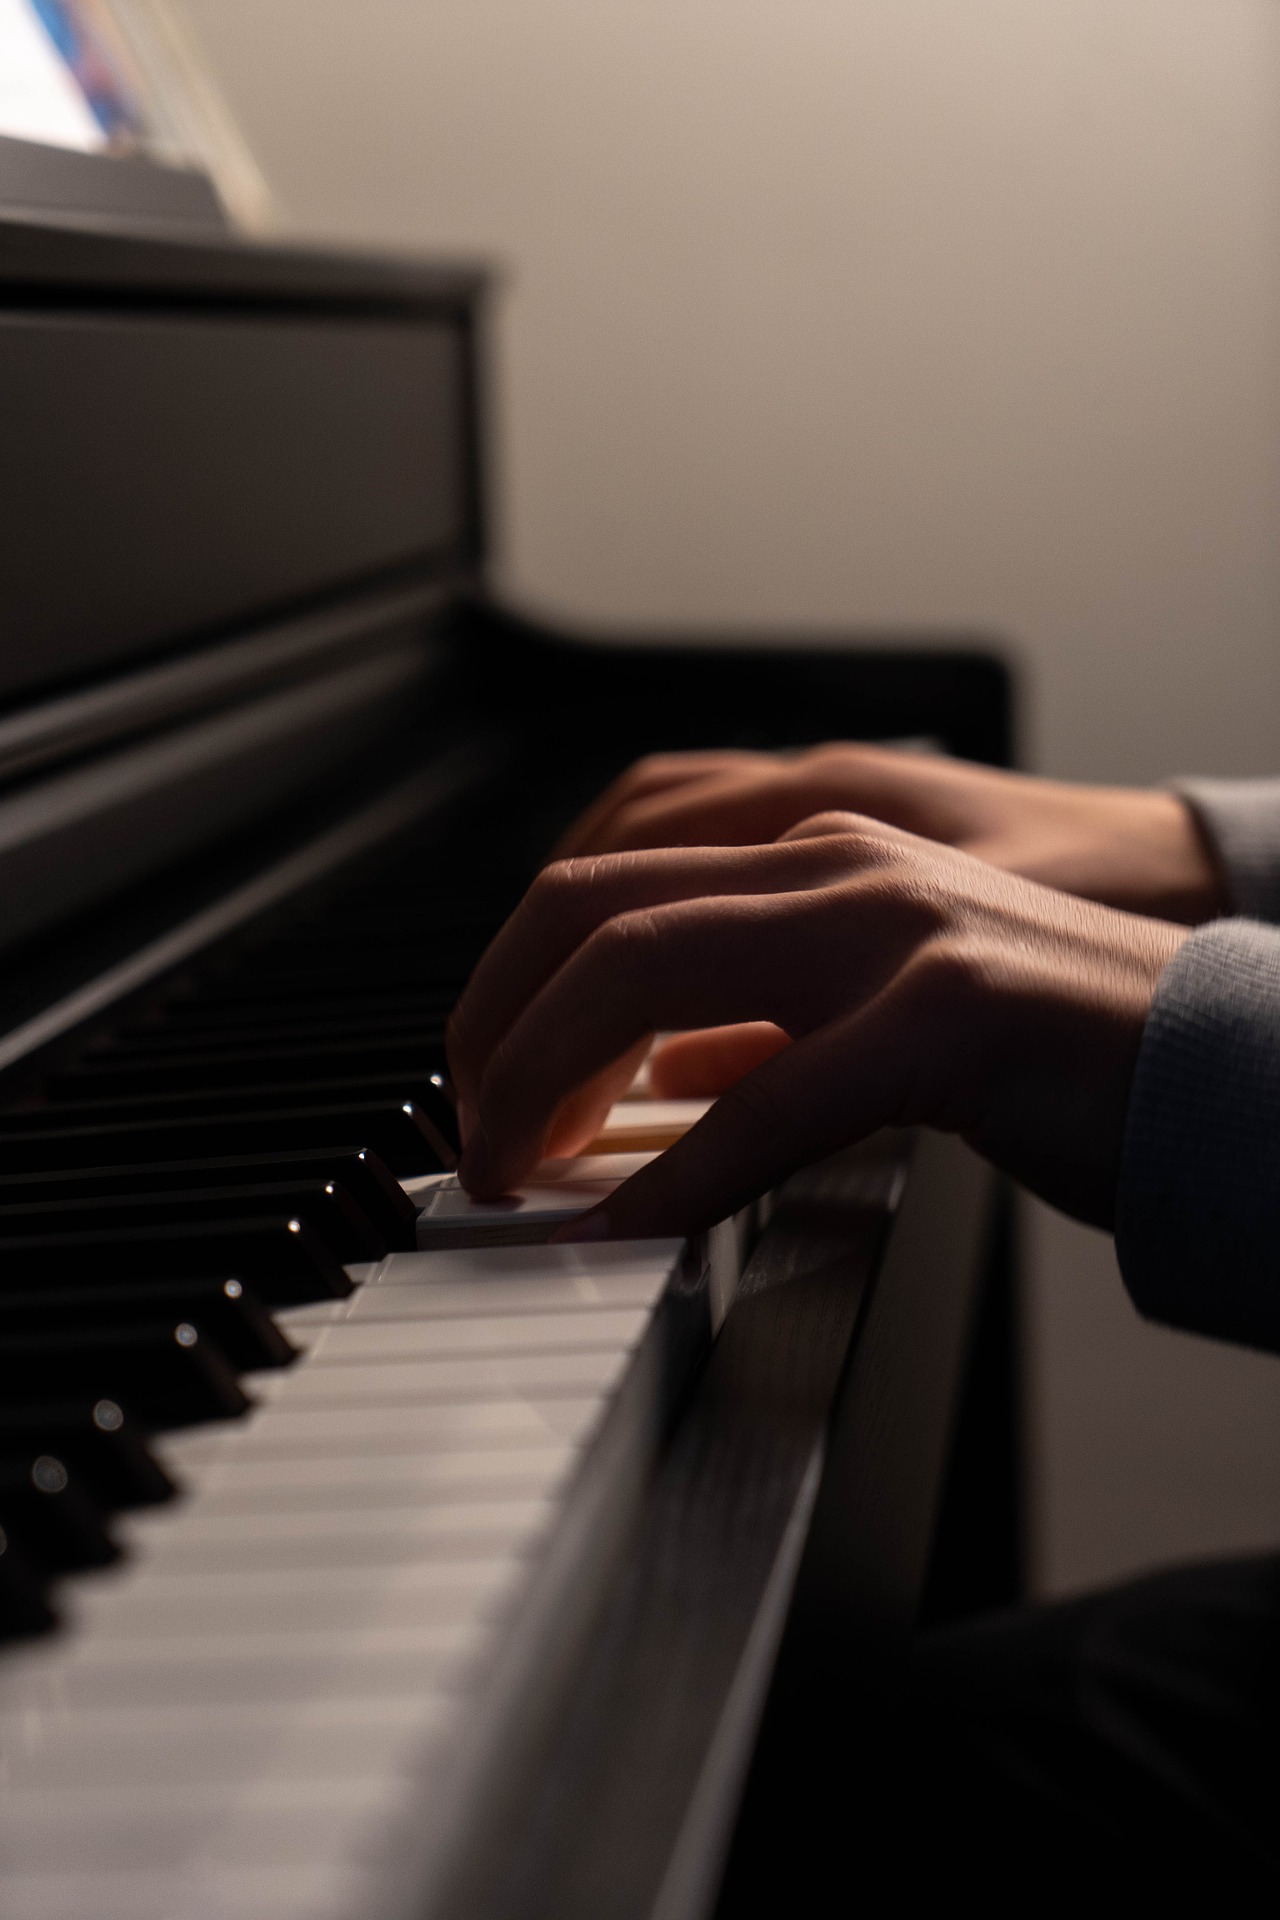 kädet jotka soittavat pianoa